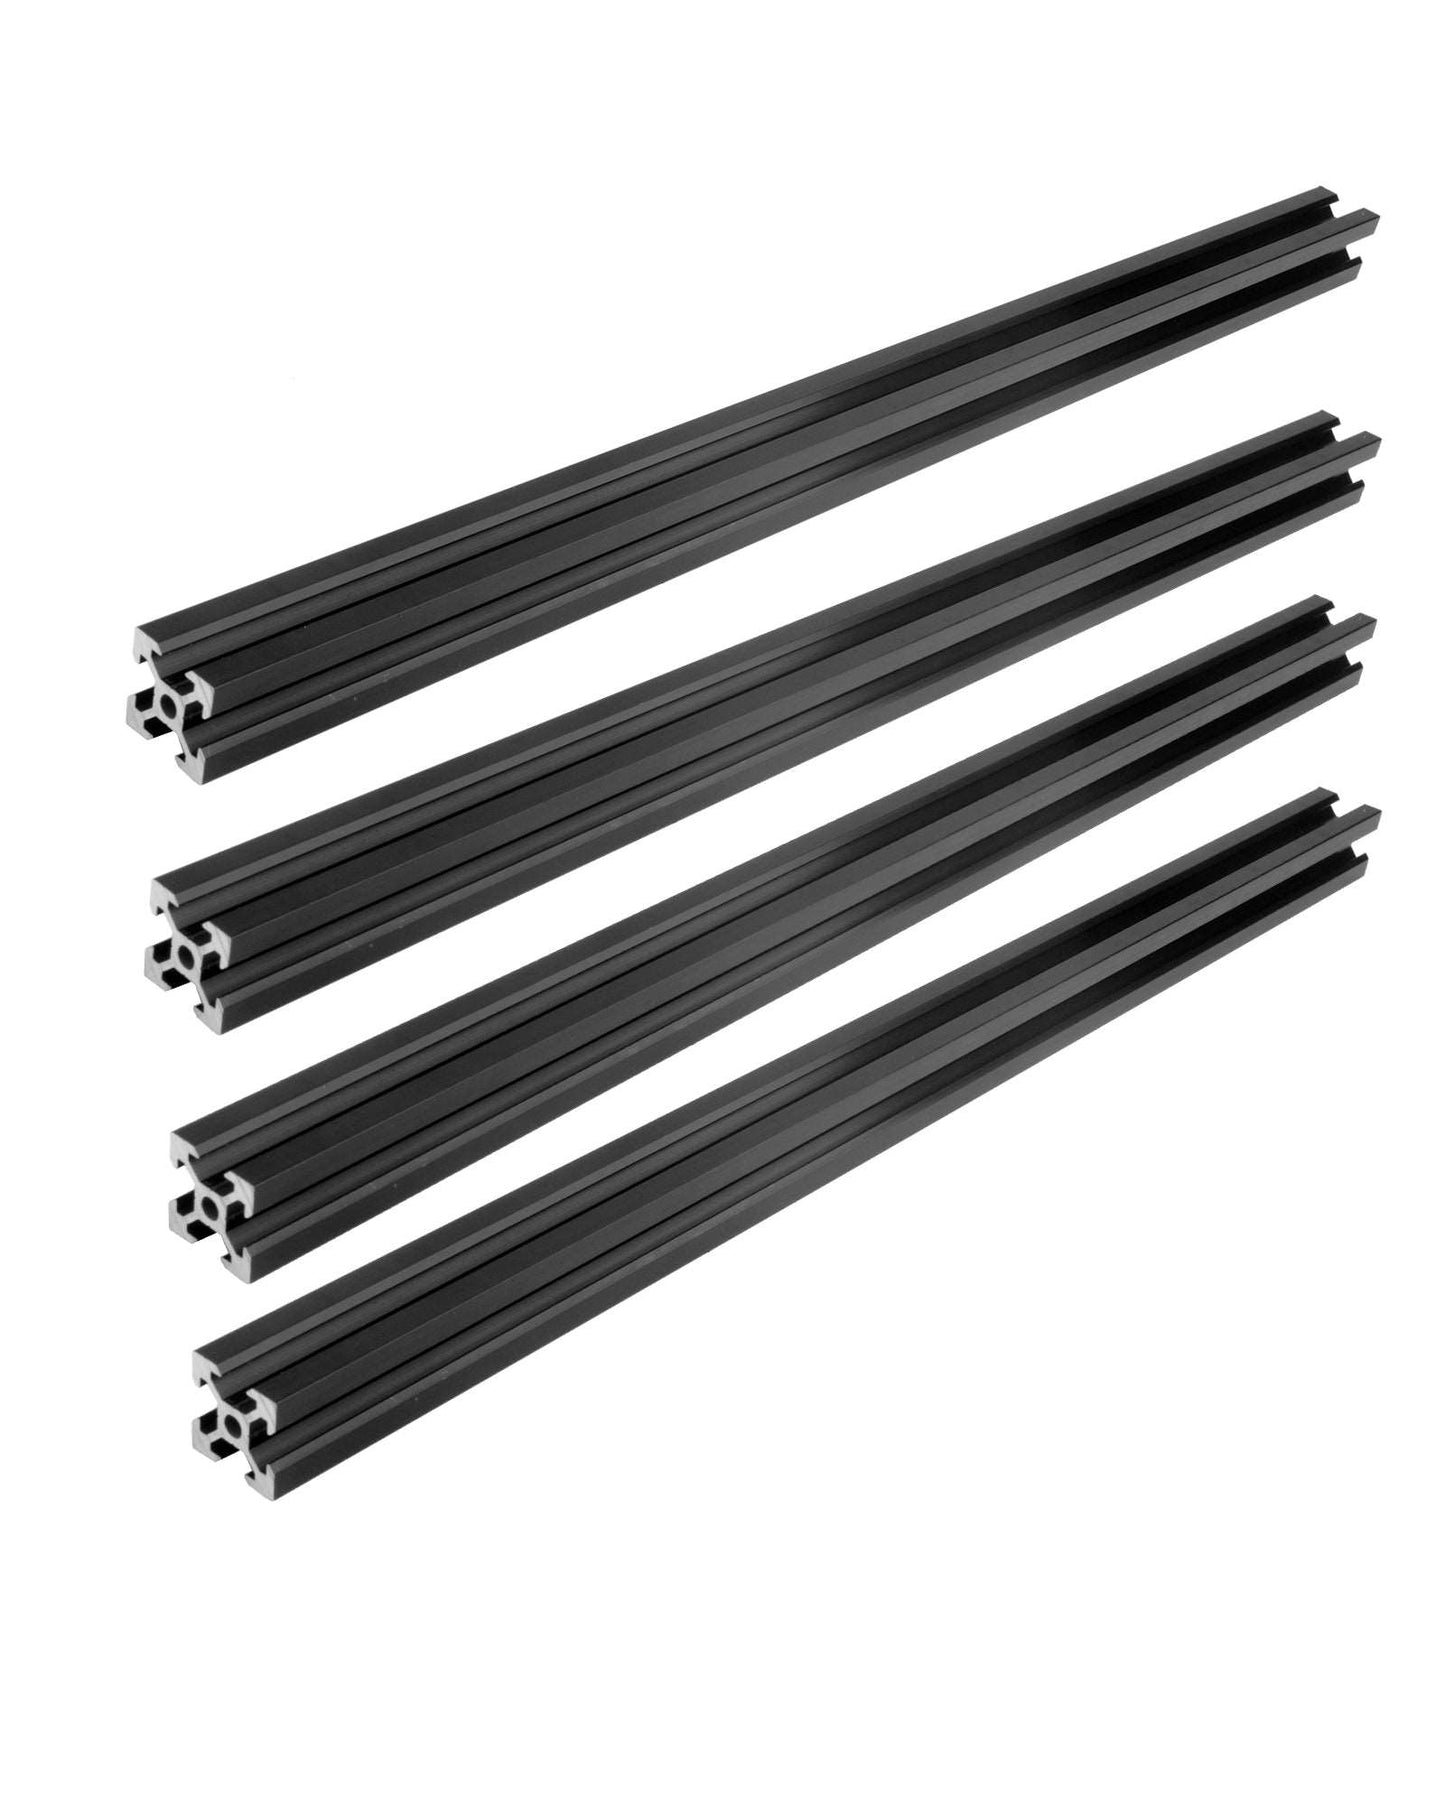 4 Stück 2020 V Typ Schwarz Europäischer Standard Eloxierte Linearschiene Aluminiumprofilextrusion für DIY 3D-Drucker und CNC-Maschinen